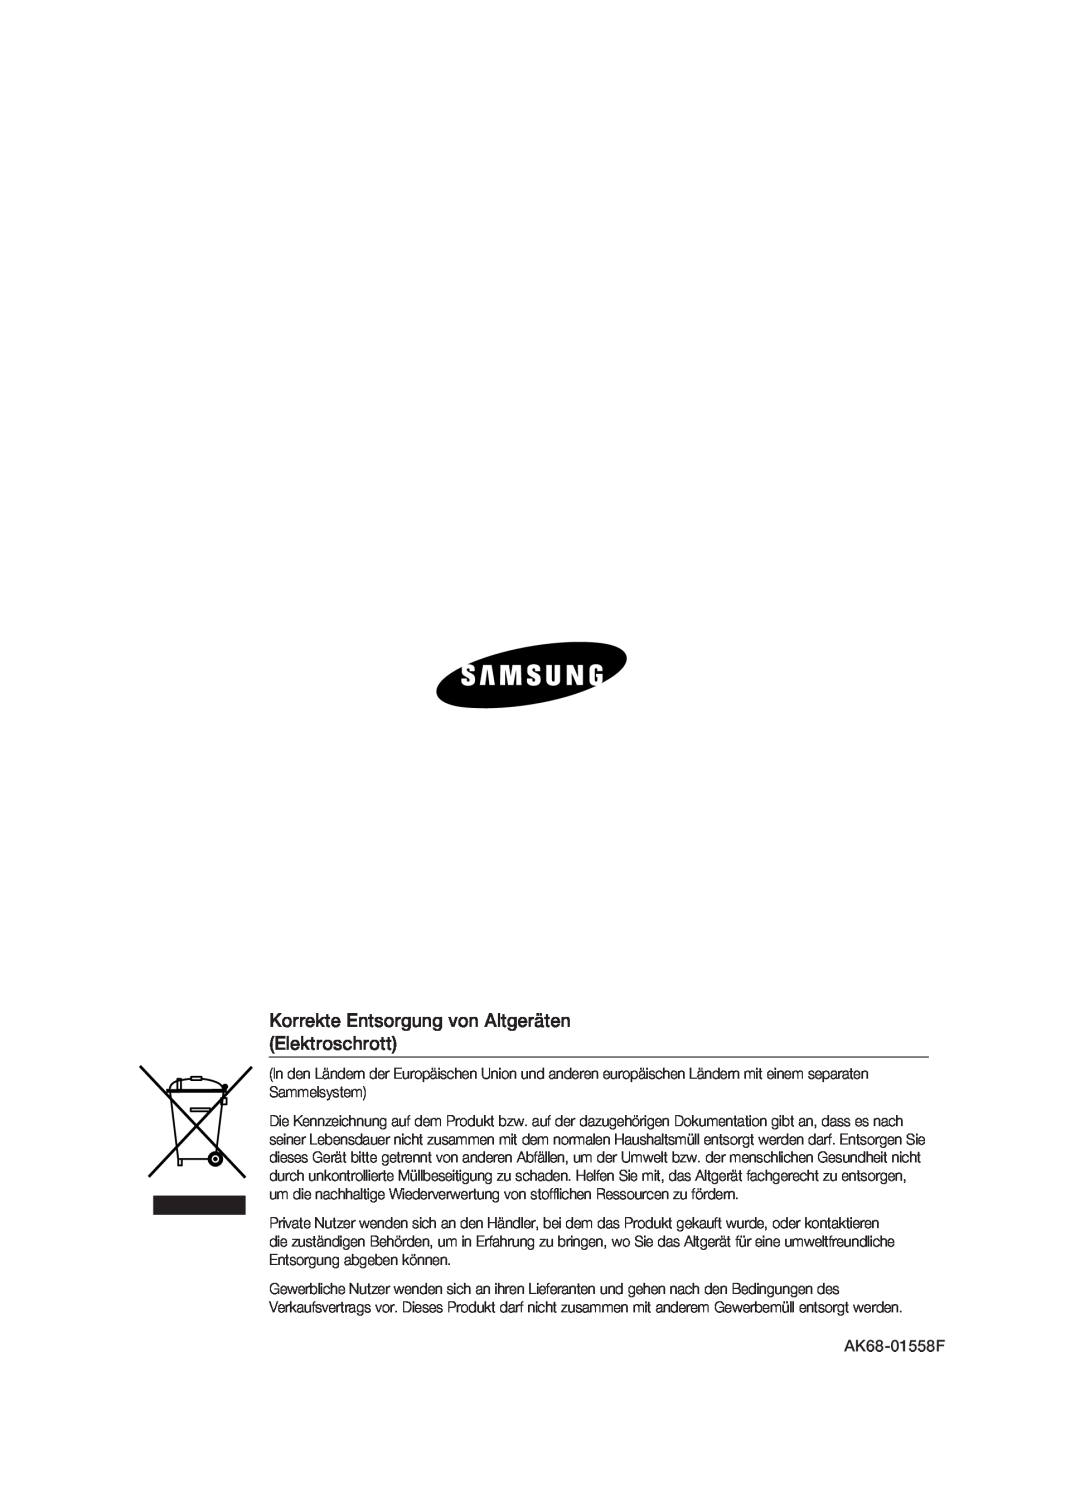 Samsung DVD-HR773/XEB, DVD-HR773/XEN, DVD-HR773/XEG, DVD-HR773/AUS manual Korrekte Entsorgung von Altgeräten Elektroschrott 